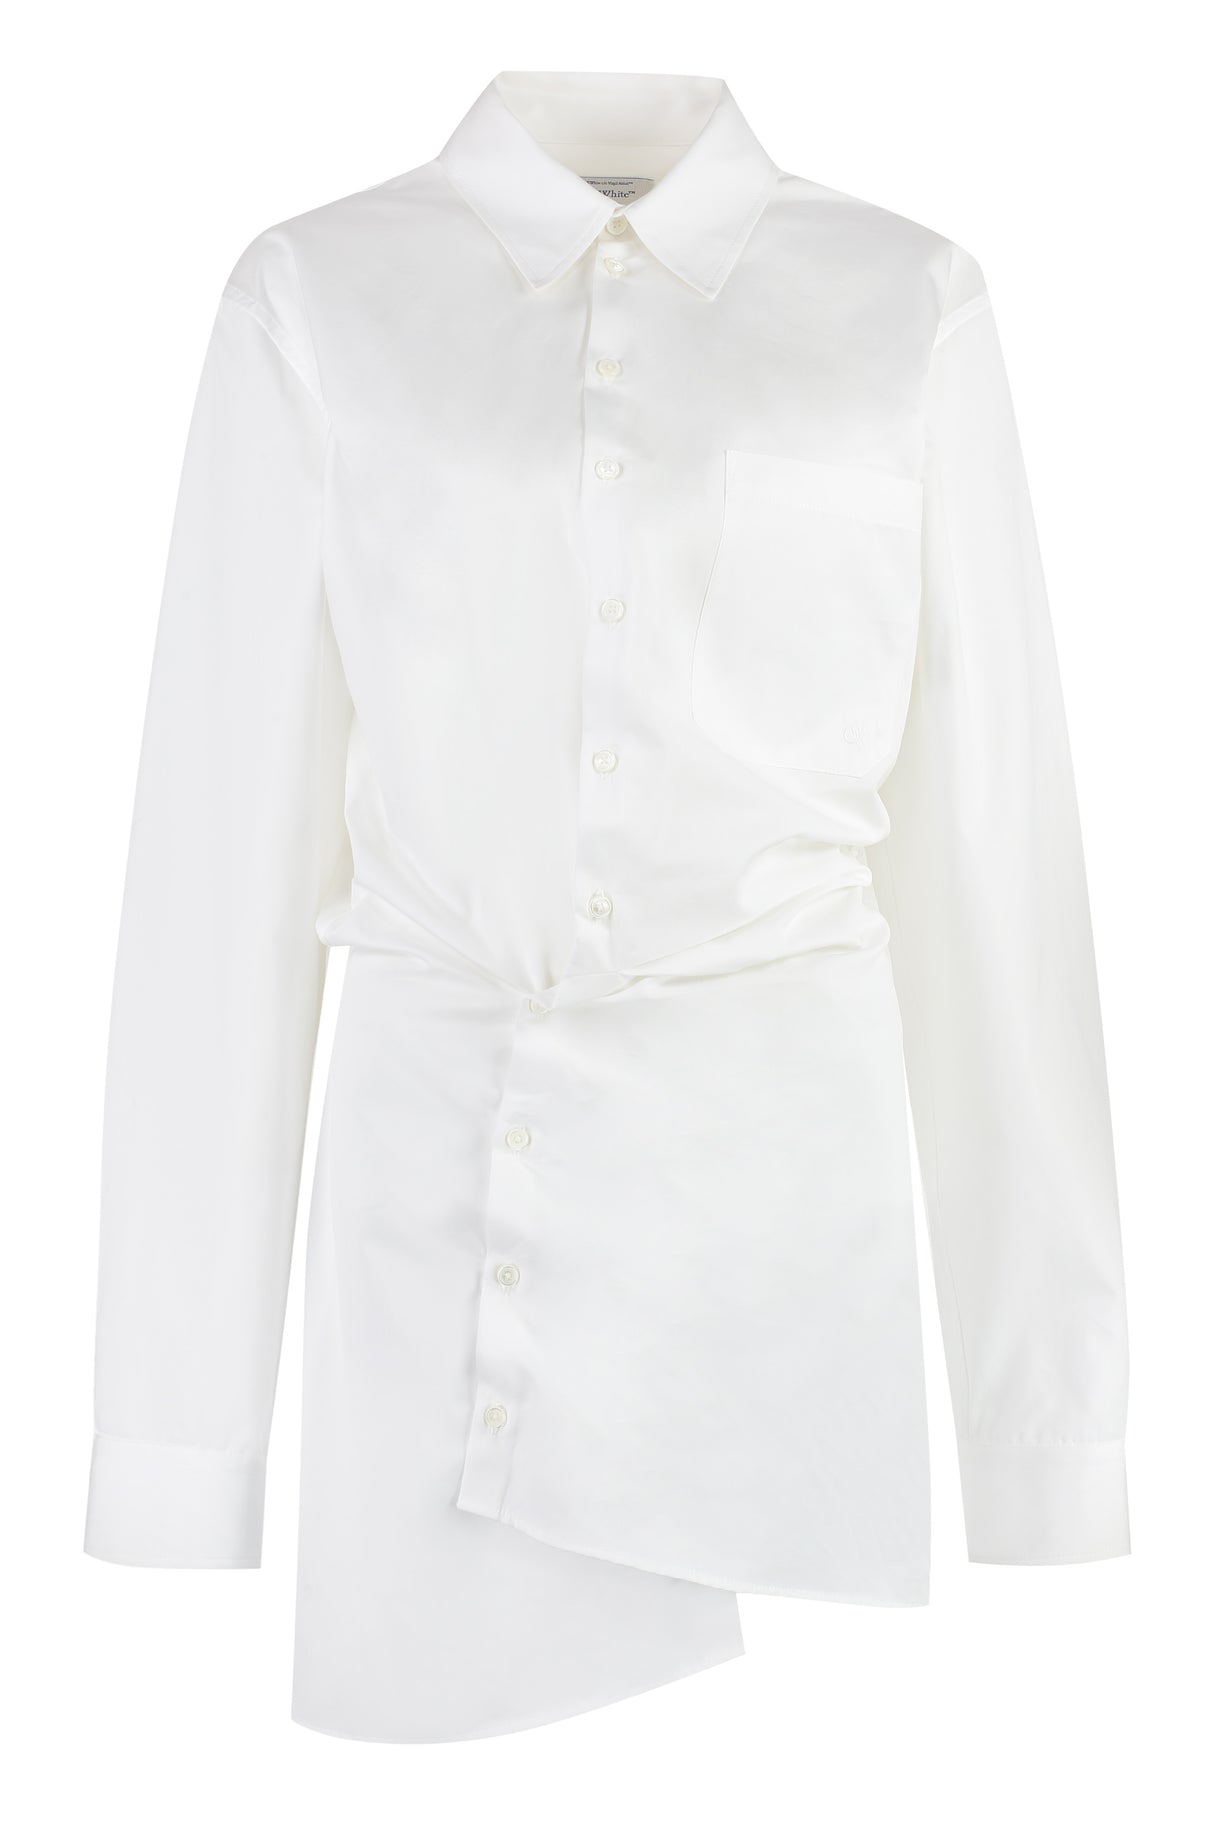 Asymmetrical White Cotton Dress - FW23 Collection